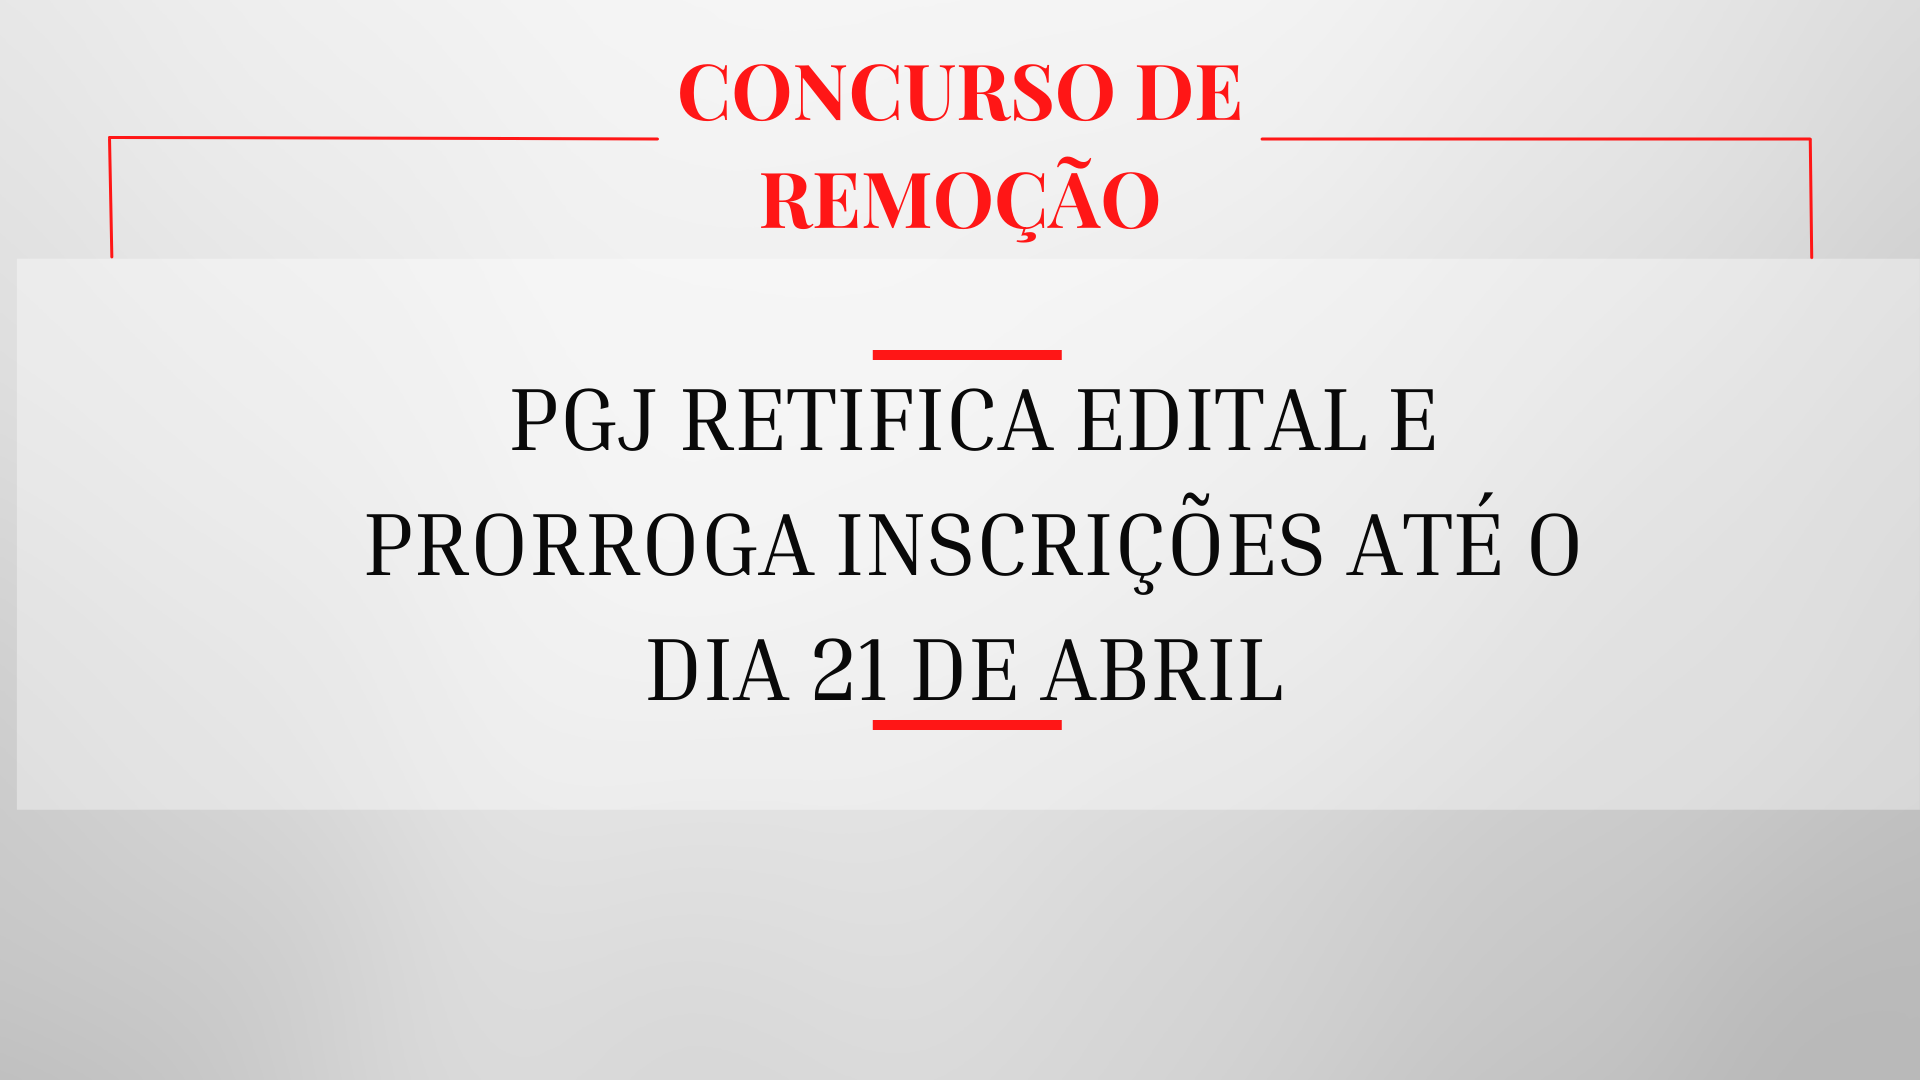 PGJ retifica edital do Concurso de Remoção e prorroga inscrições até o dia 21 de abril